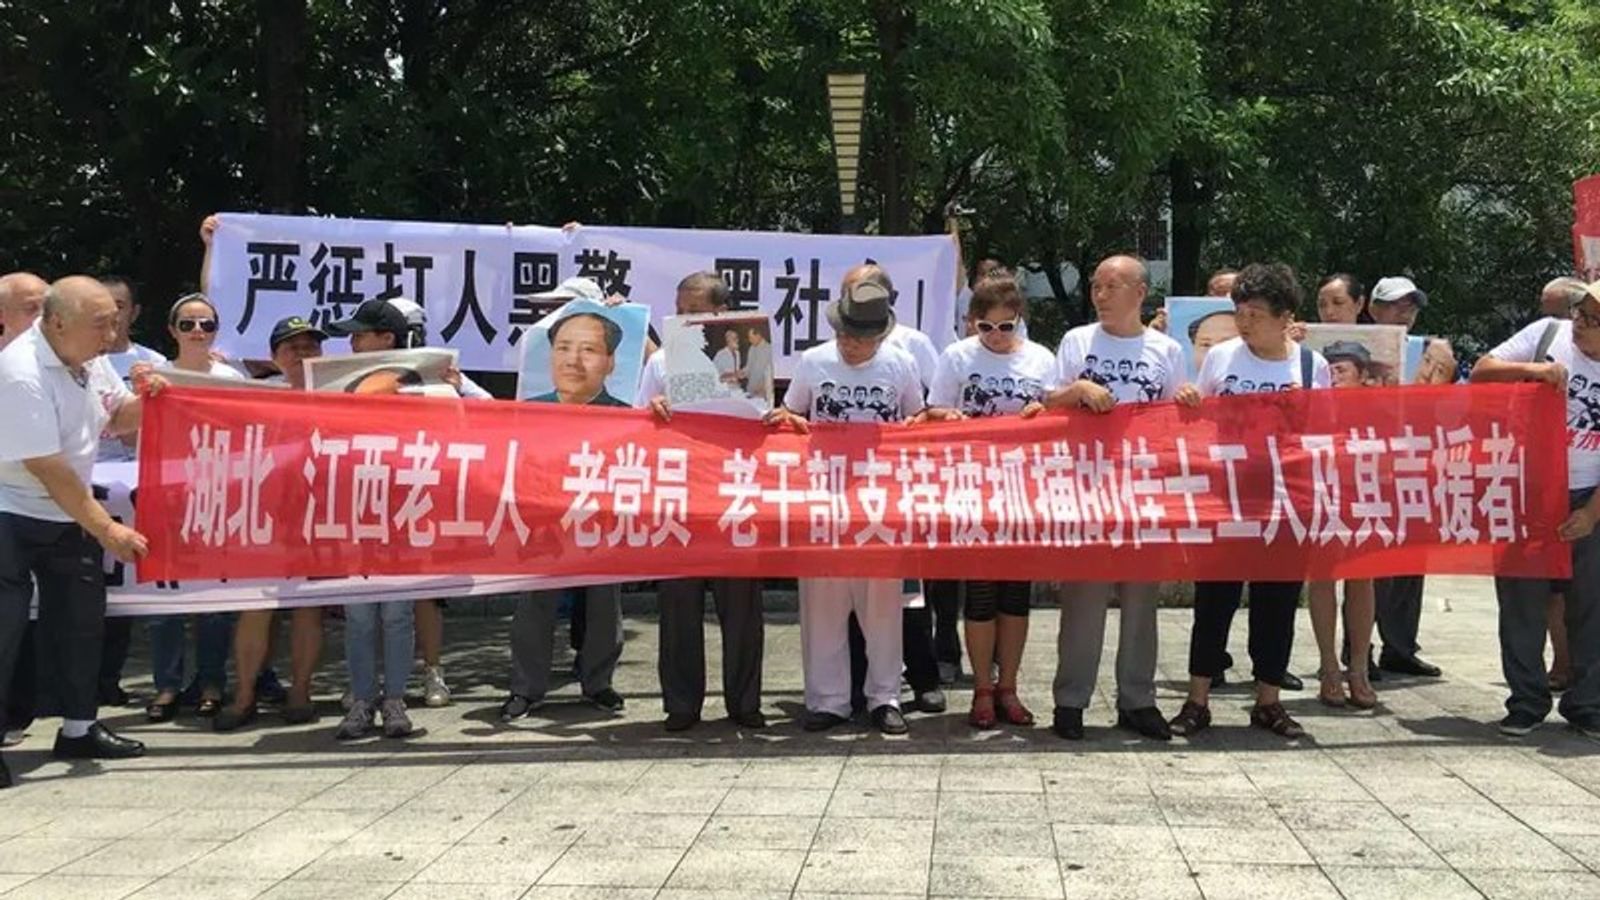 Протестующие поддерживают бастующих рабочих фабрики Jasic возле полицейского участка, Китай, 6 августа 2018 г.